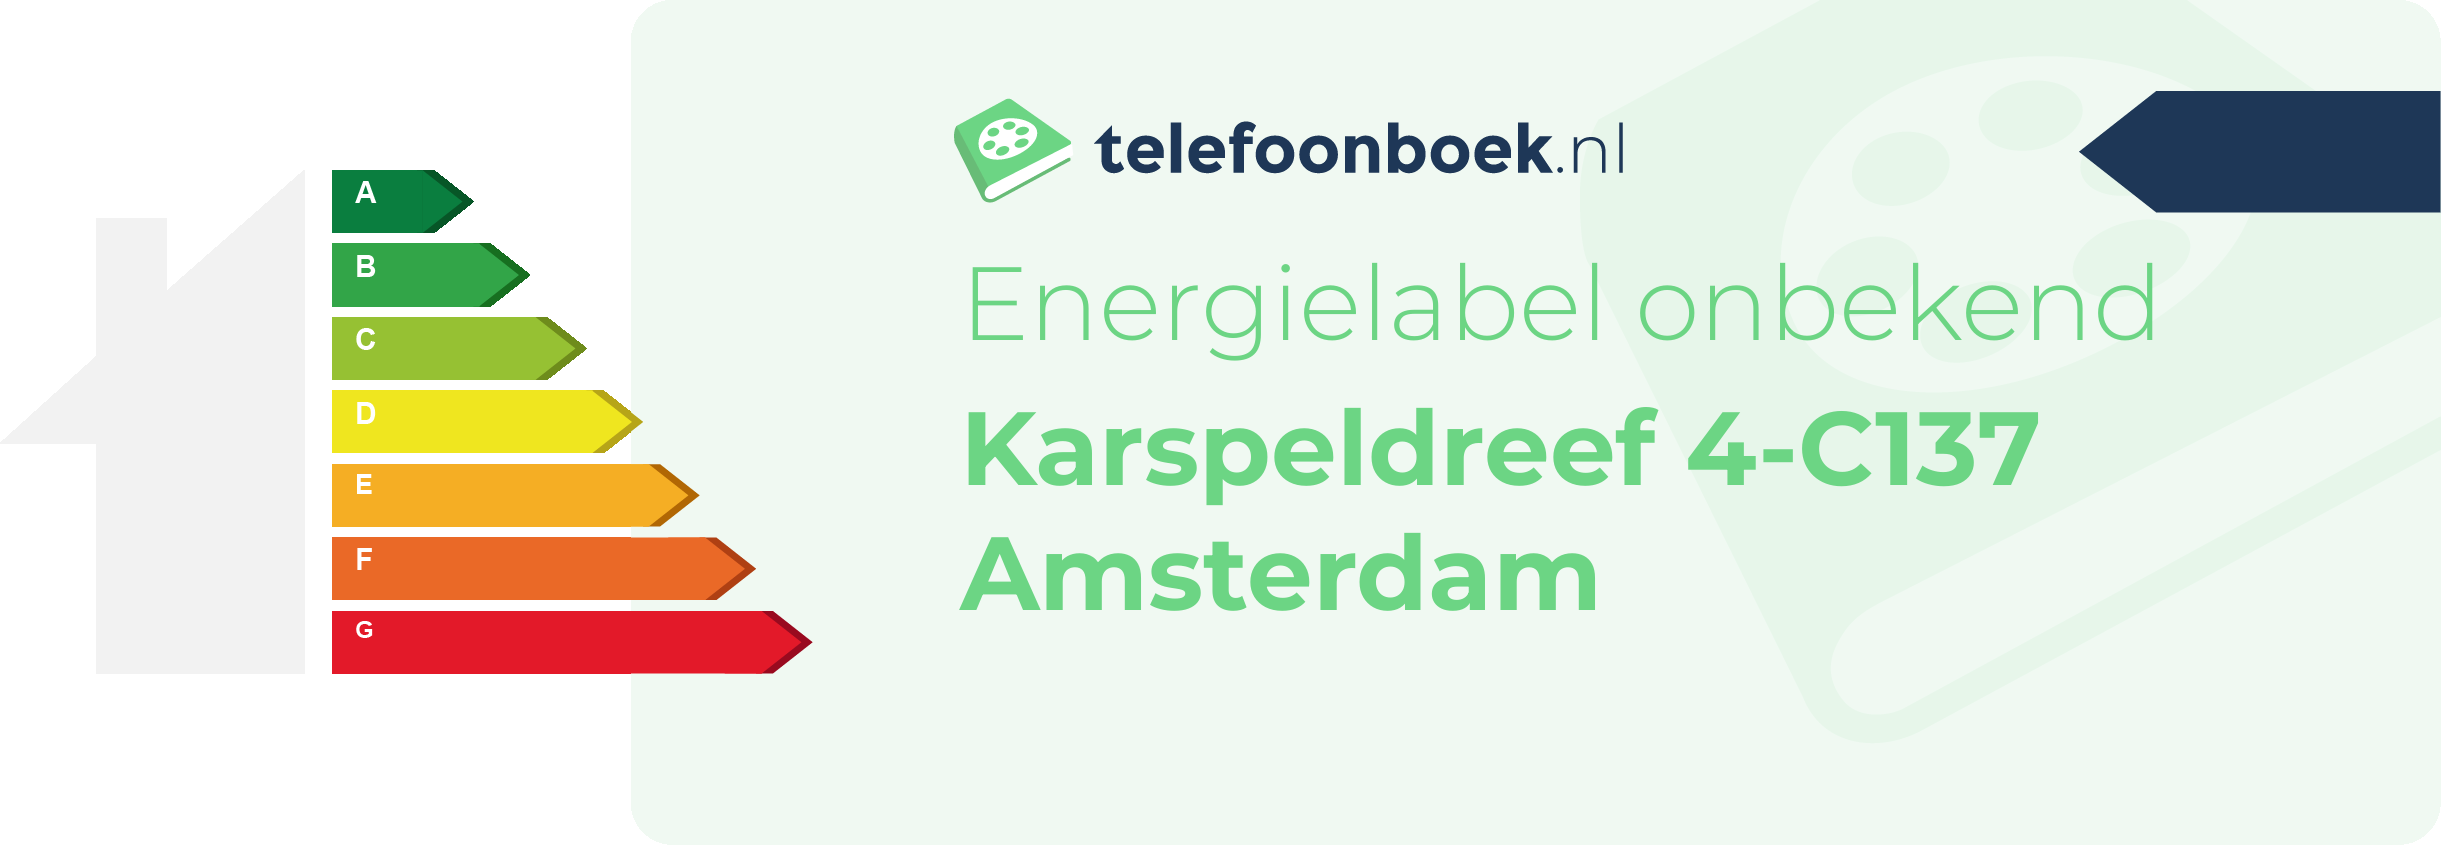 Energielabel Karspeldreef 4-C137 Amsterdam